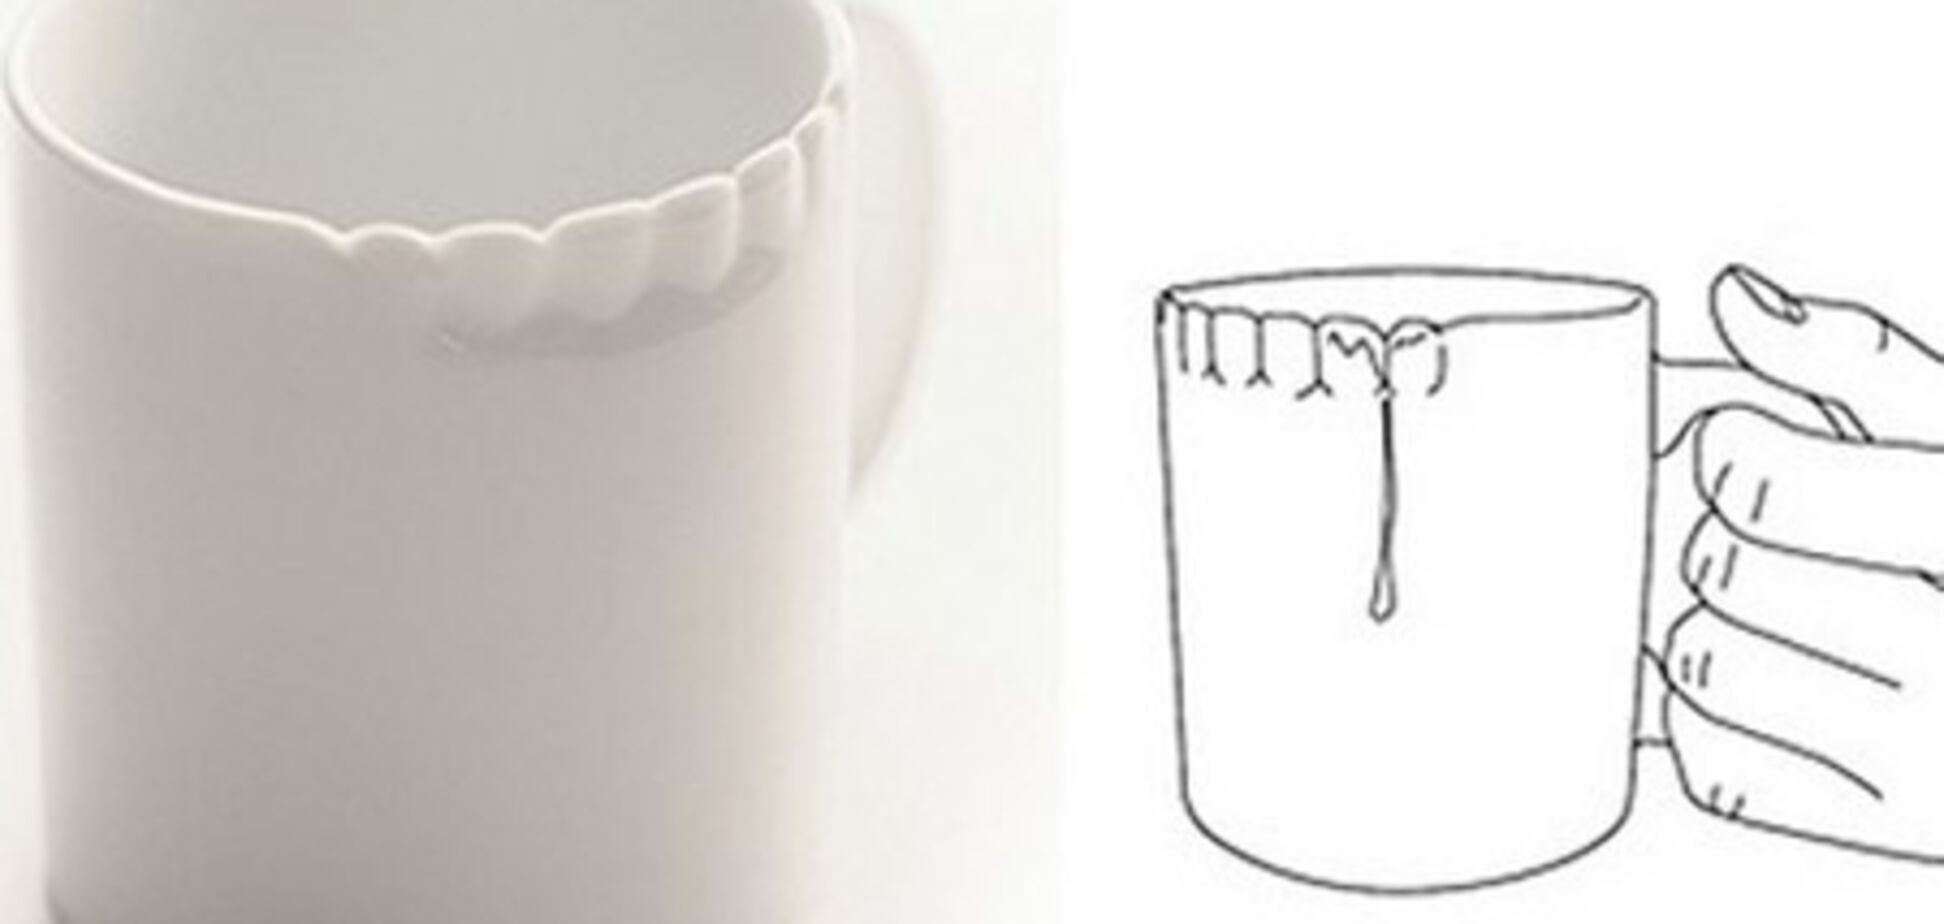 «Зубастая» чашка для тех, кто забывает чистить зубы
 
